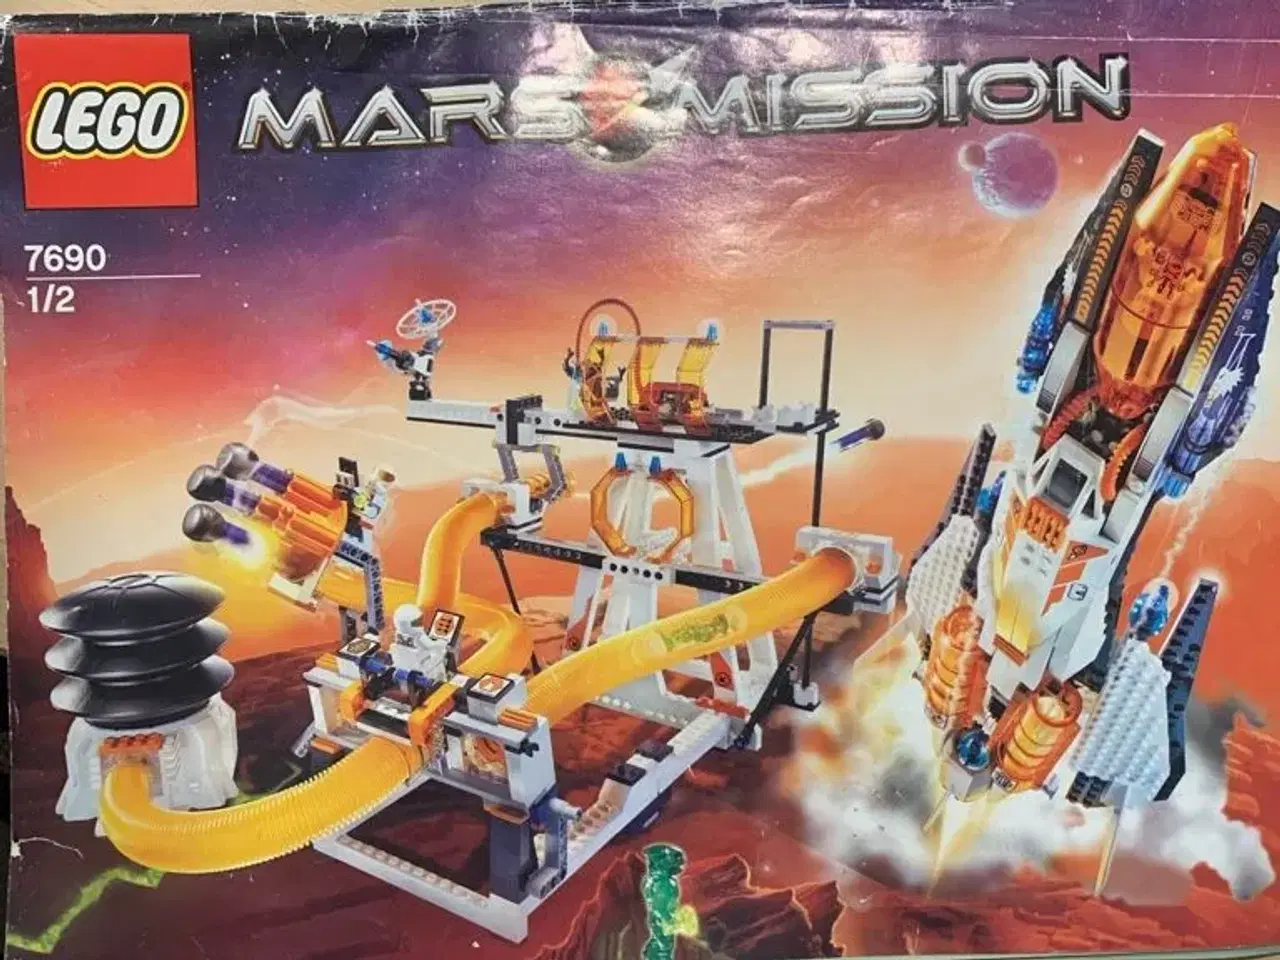 Billede 1 - Mars mission